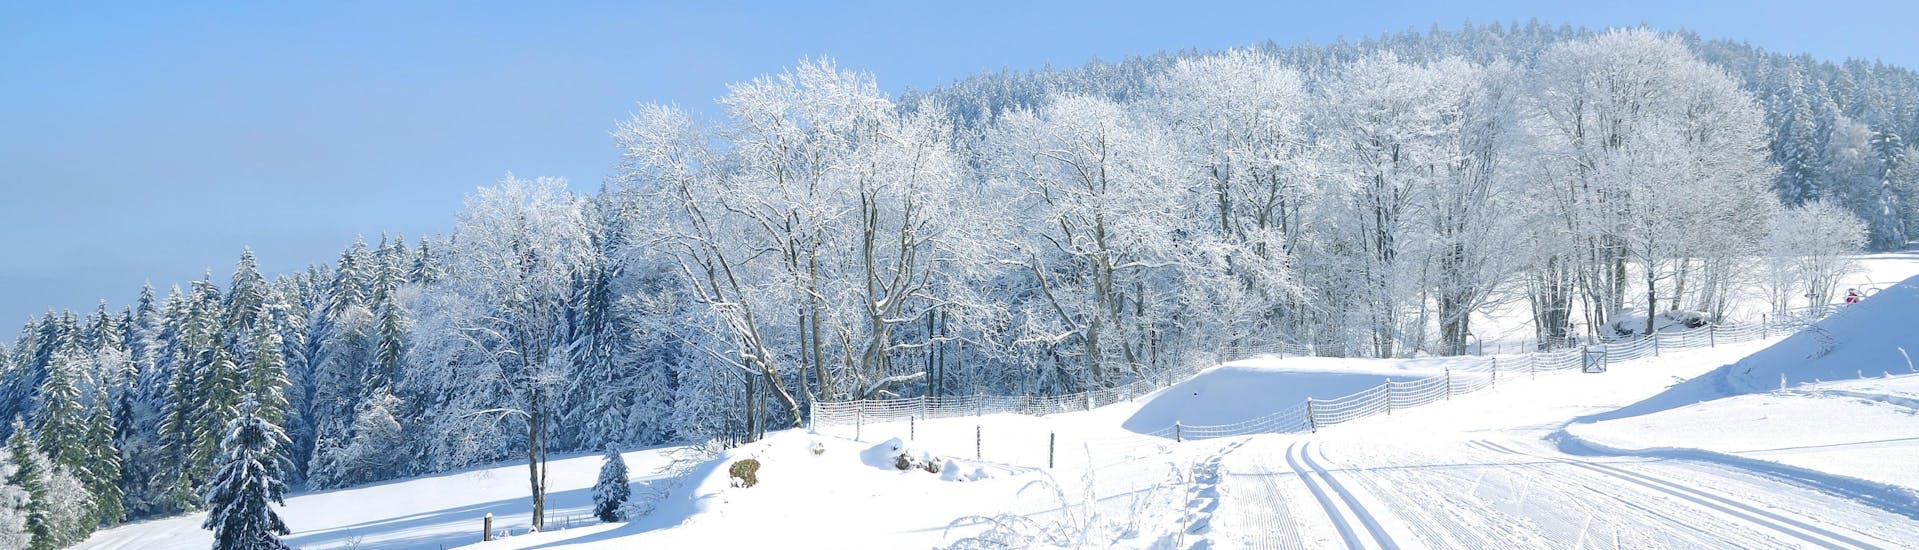 Image des pistes à Mitterdorf (Almberg) - Mitterfirmiansreut où vous pouvez réserver des leçons de ski.